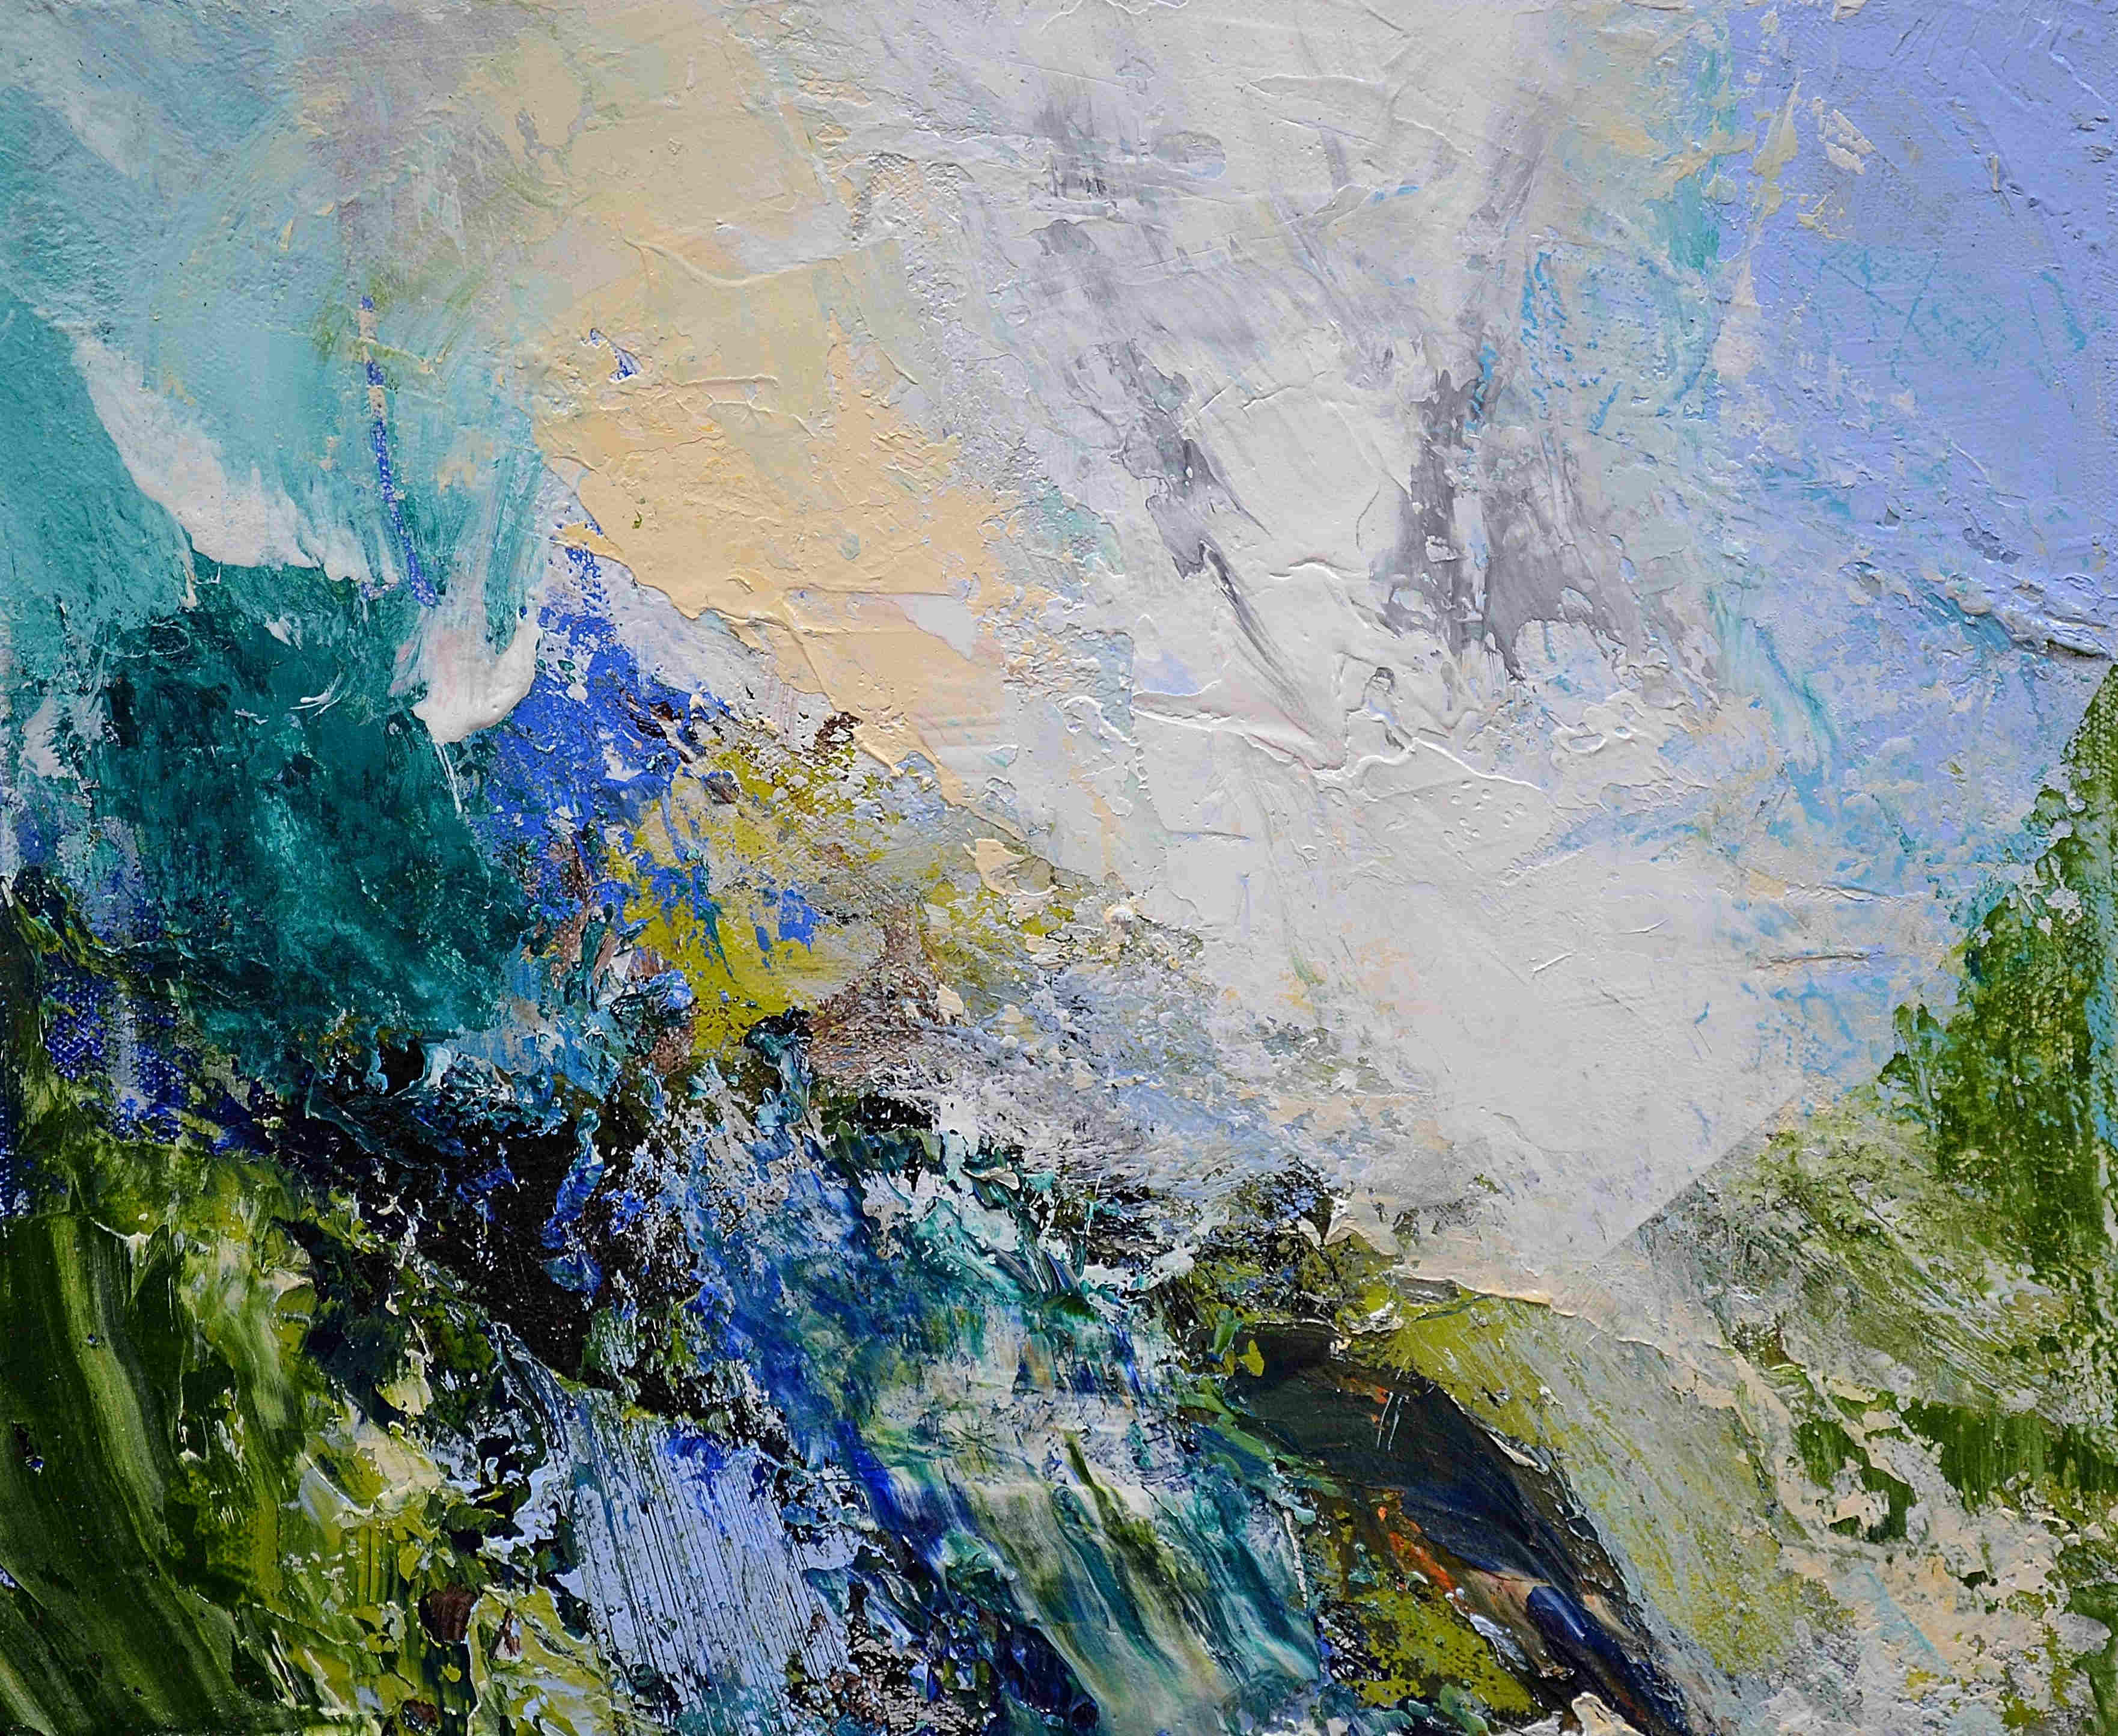 'Mountain Ridge, Rock, Low White Cloud' by artist Matthew Bourne